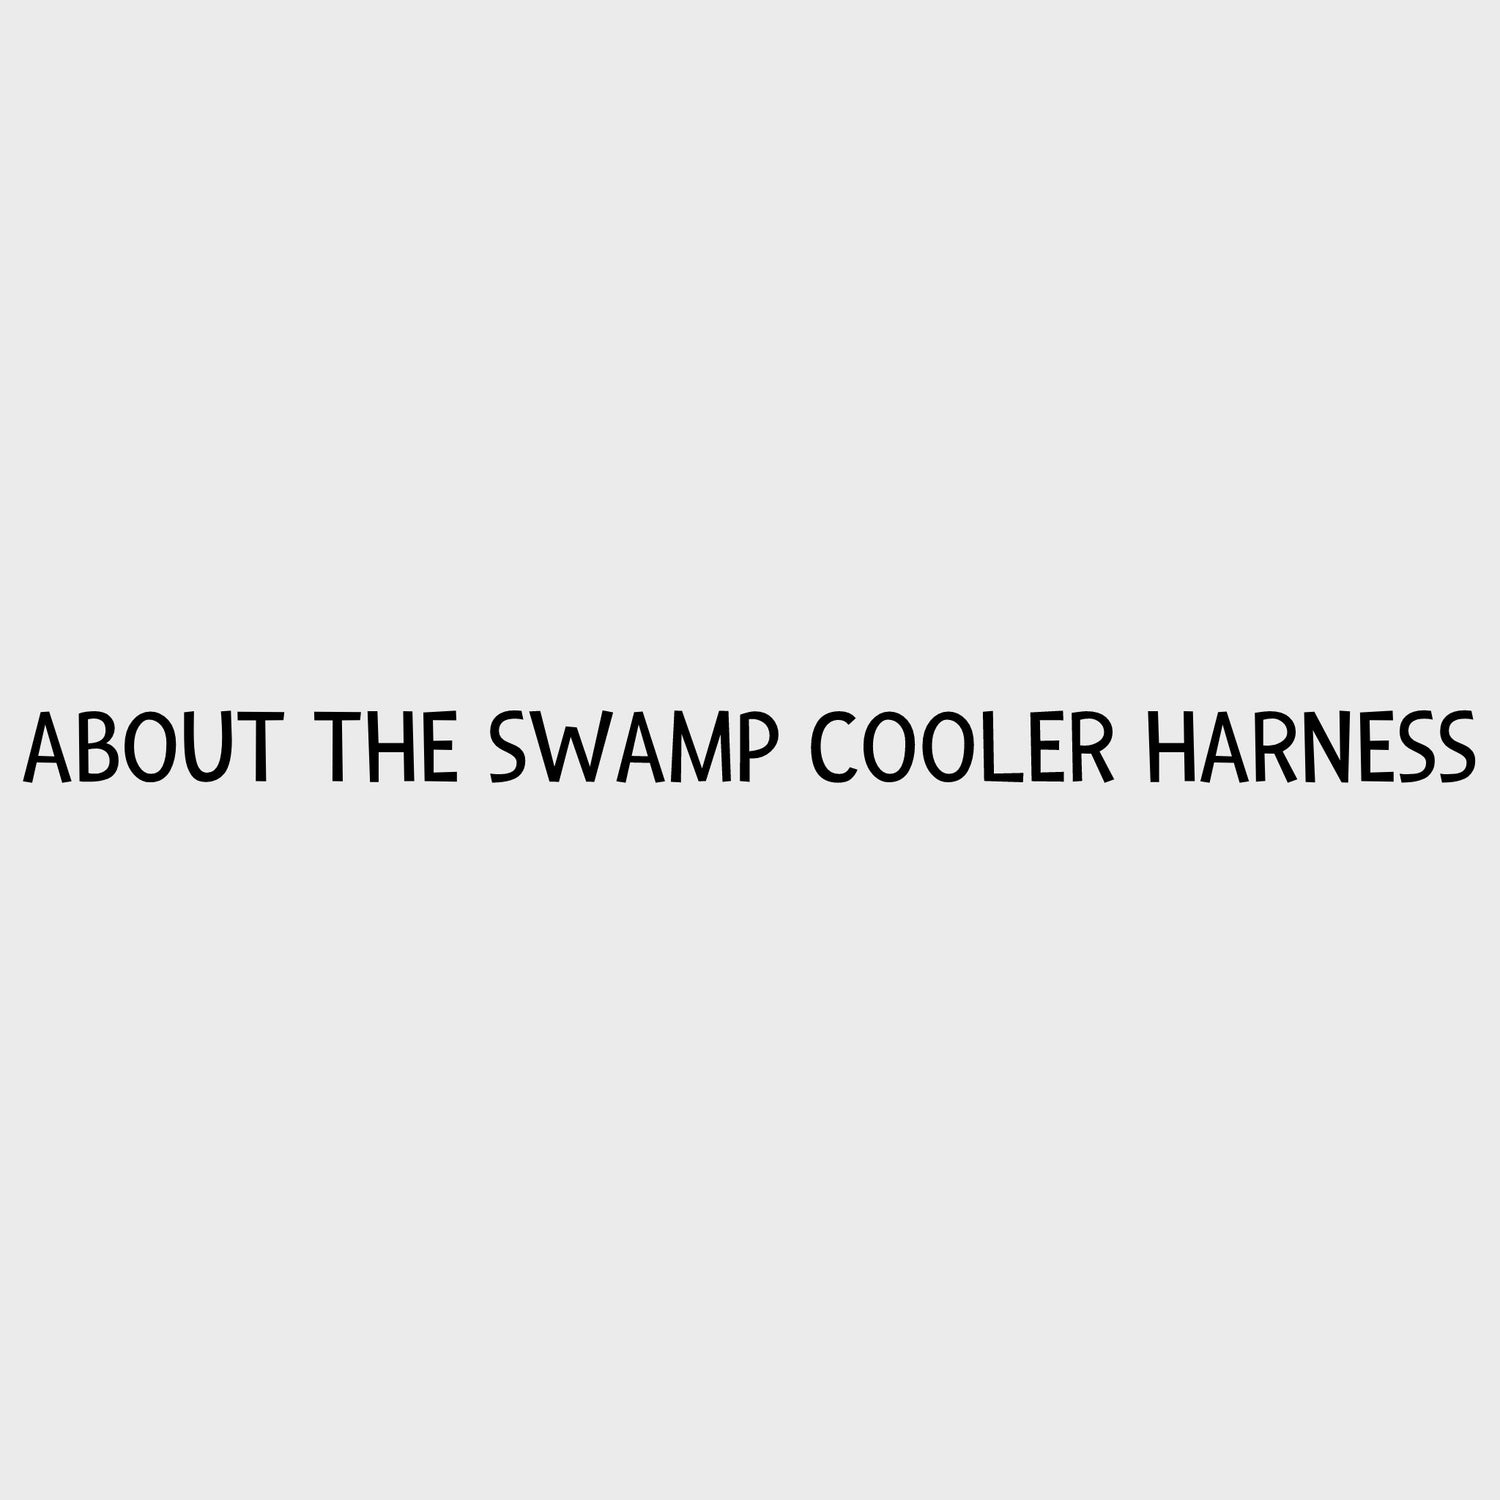 Video - Ruffwear Swamp Cooler Harness